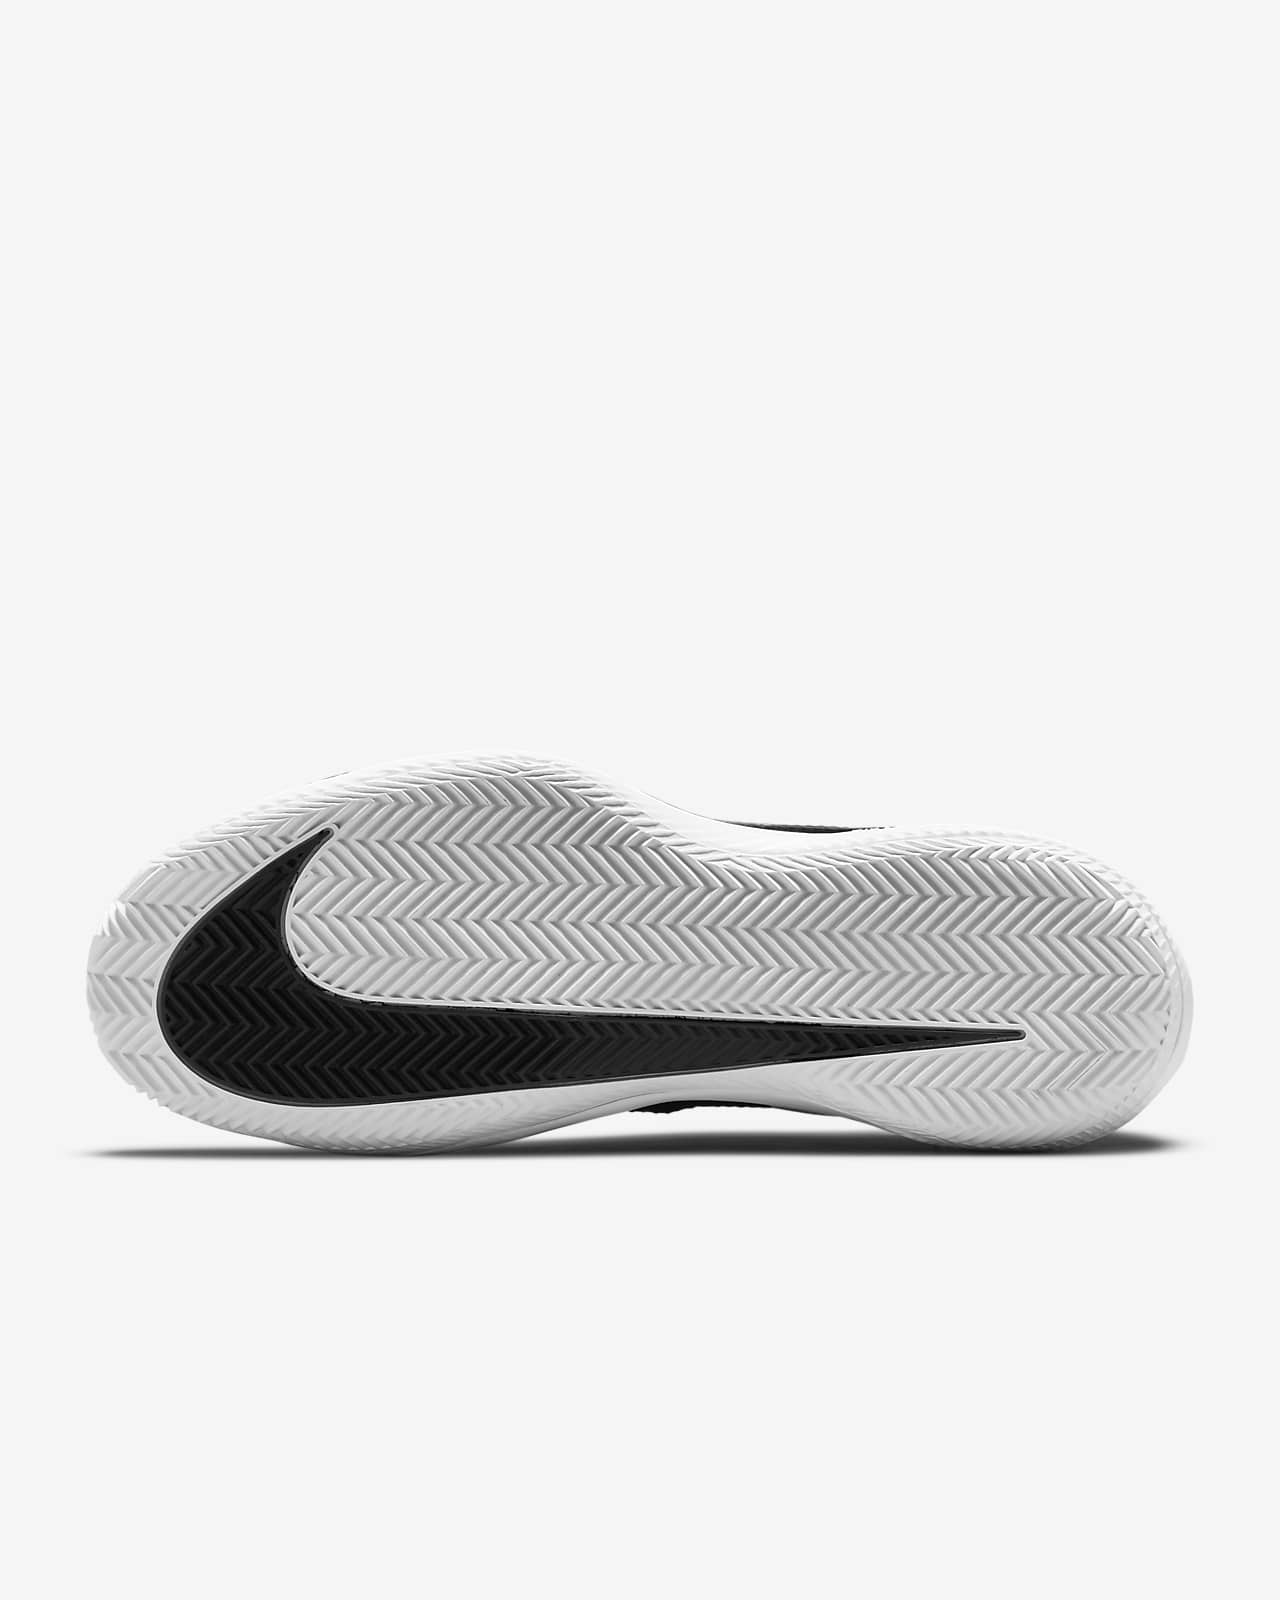 NikeCourt Air Zoom Pro Zapatillas de tenis para tierra batida - Mujer.